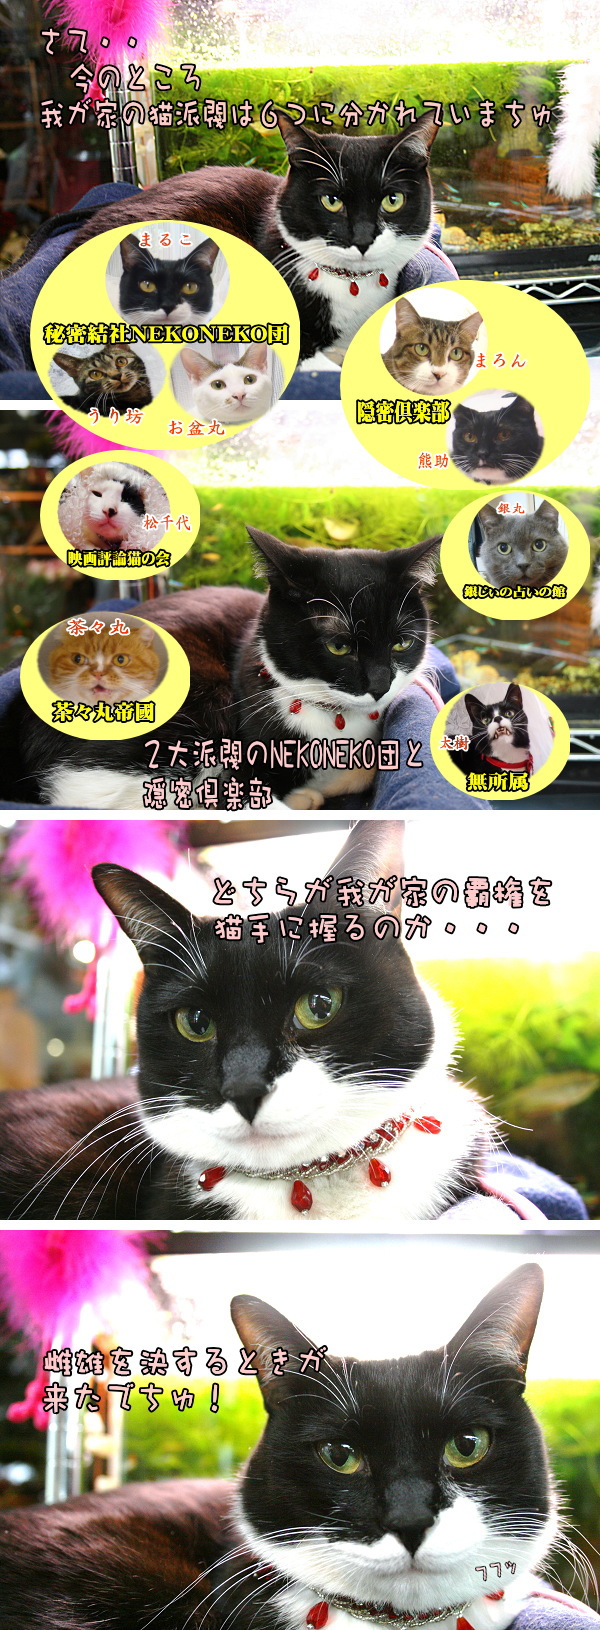 猫漫画　覇権を猫手に握るでちゅ_e0146584_23471289.jpg